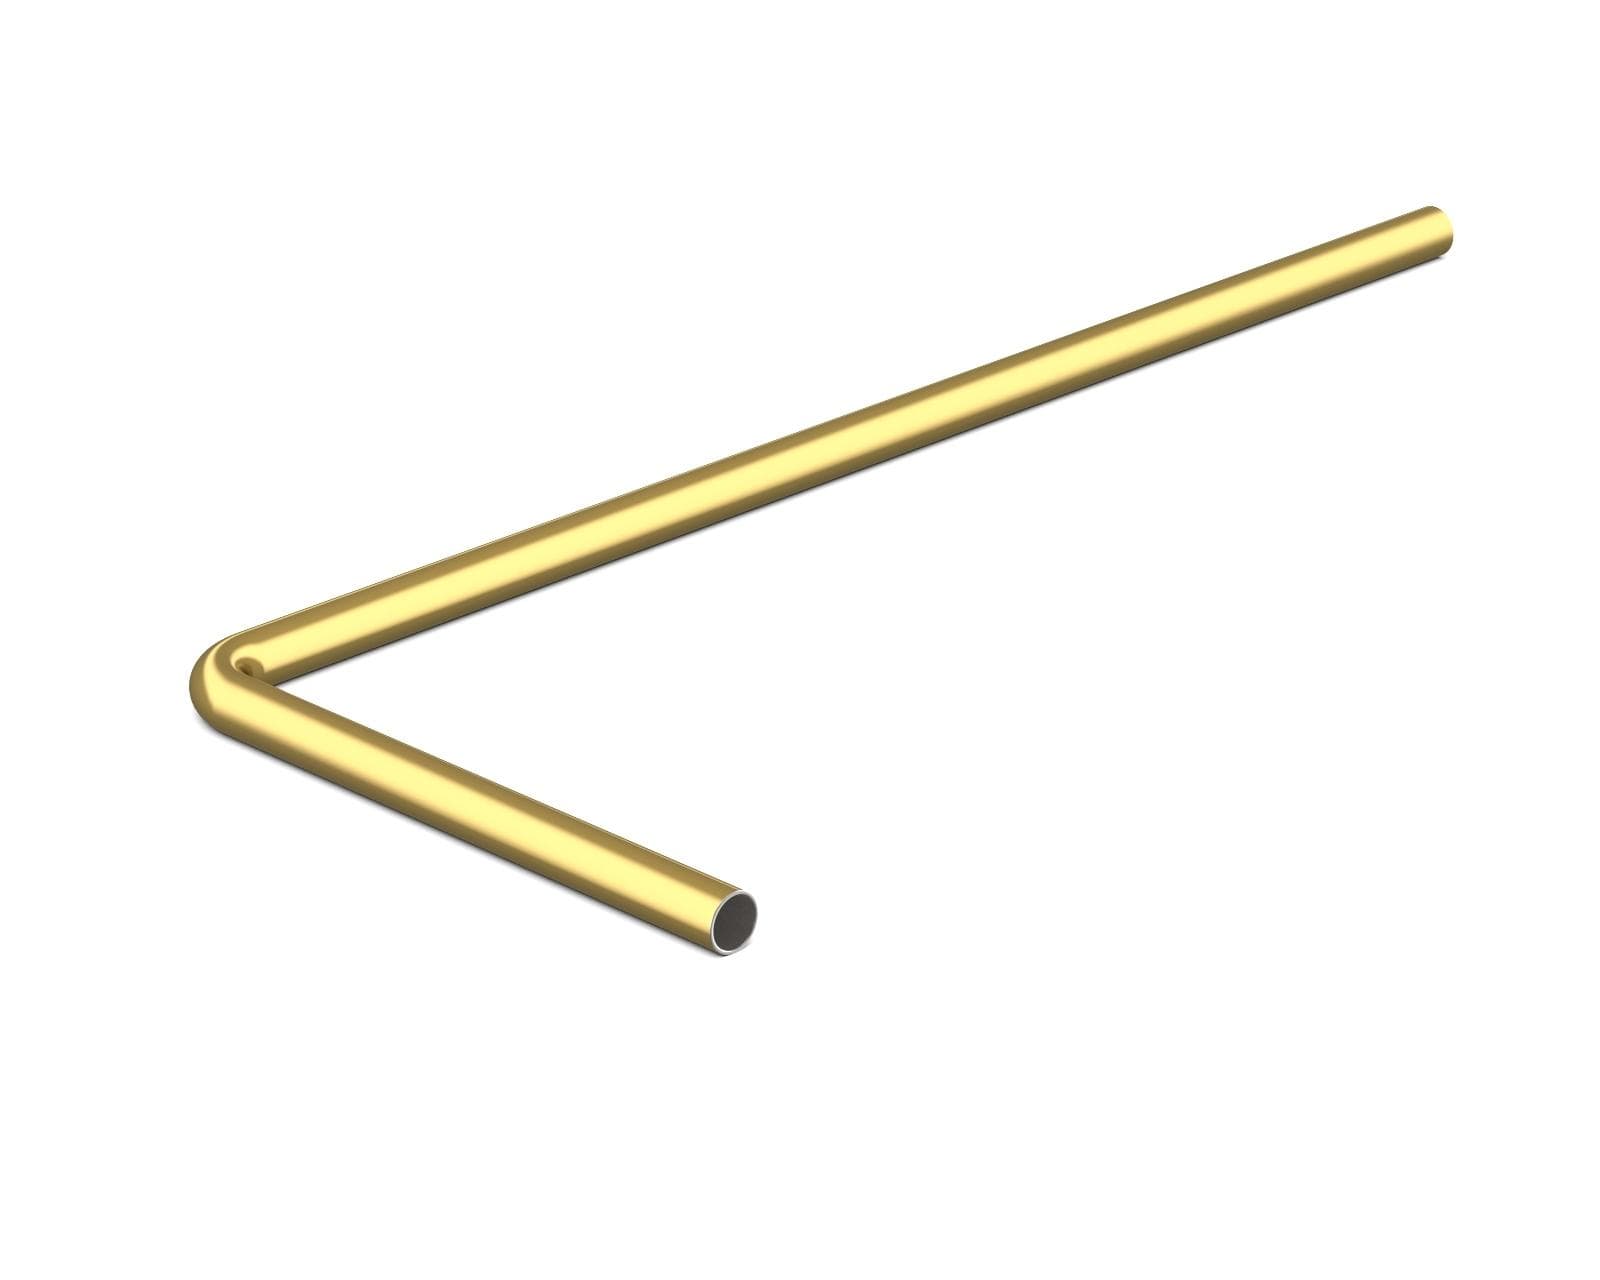 PrimoChill SX Pre-Bent 14mm ID x 16mm OD Rigid Copper Tube - Candy Gold